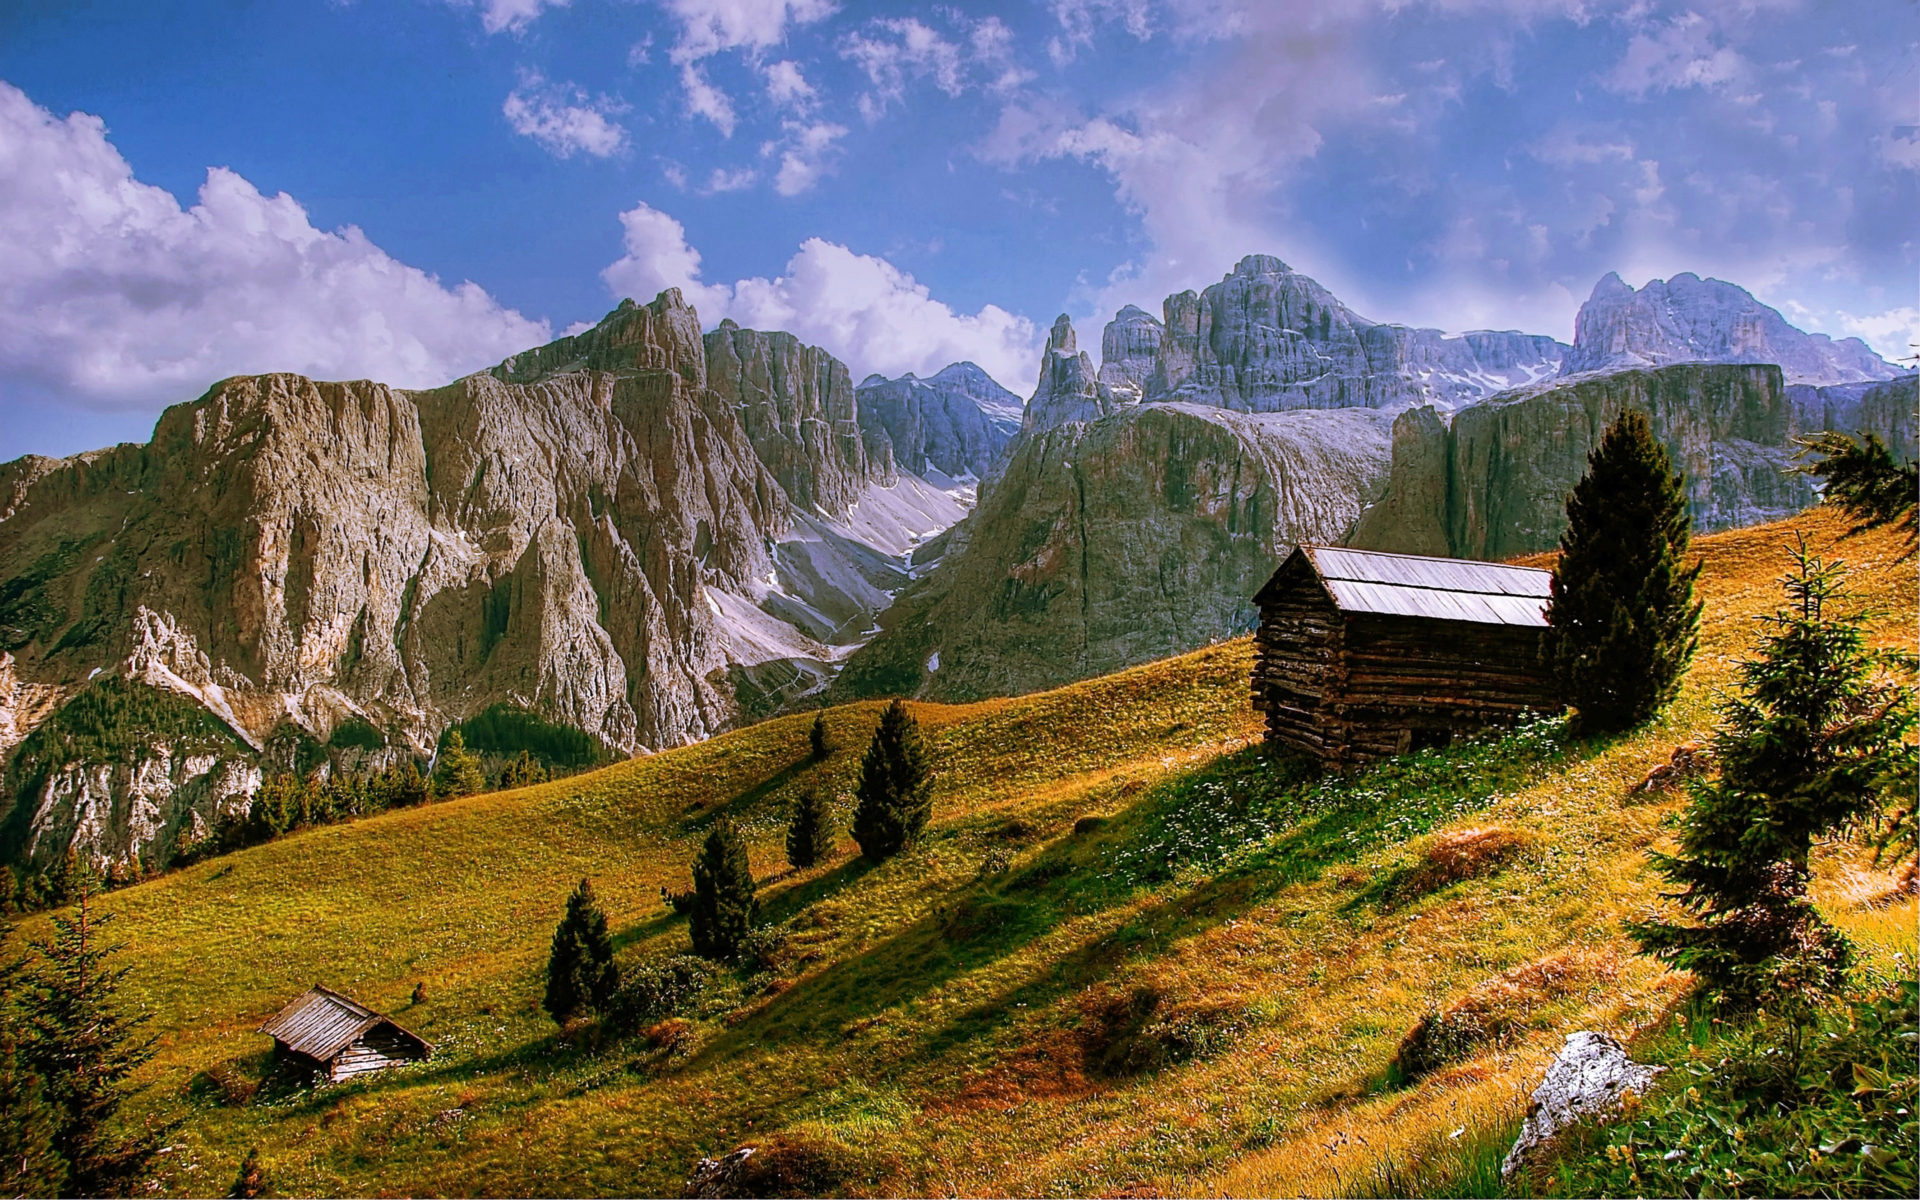 Dolomites scenery, Xfce desktop, Picture eyecandy, Beautiful landscapes, 1920x1200 HD Desktop